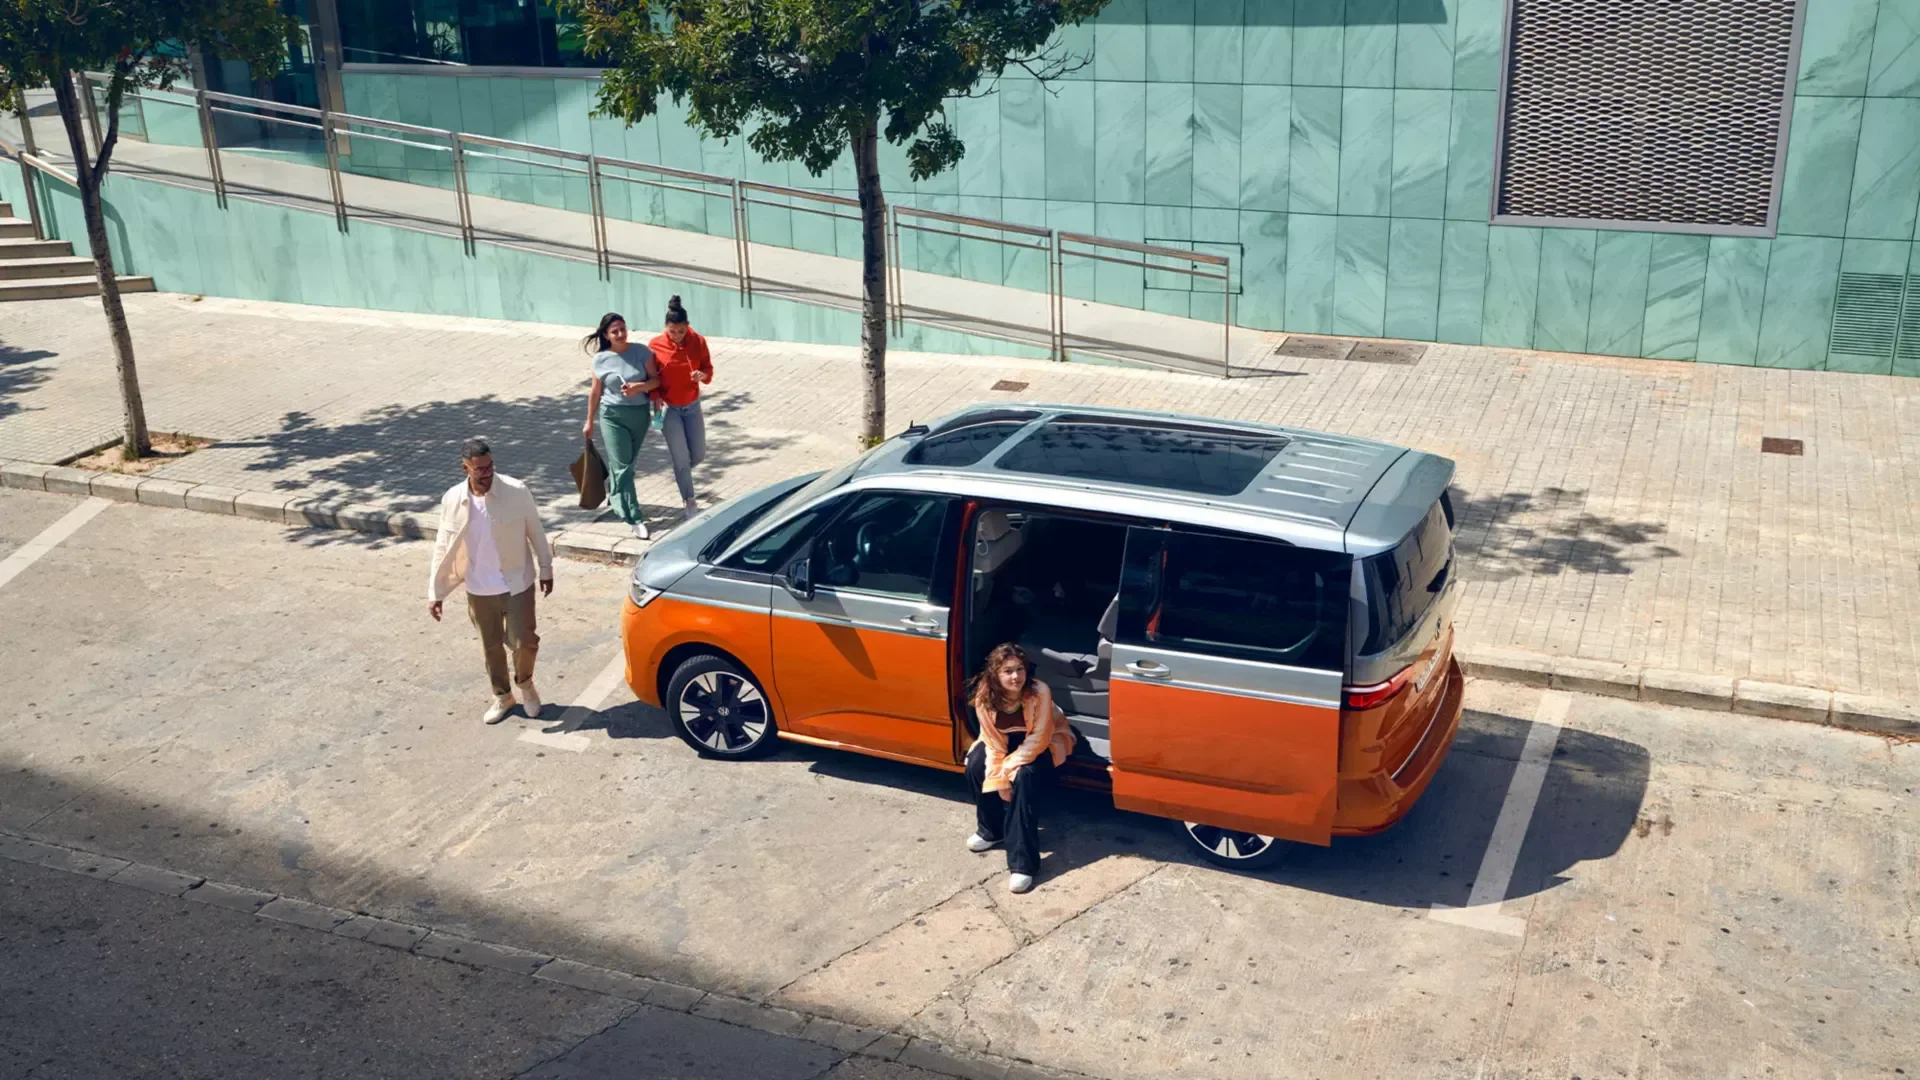 The new Volkswagen Multivan is here